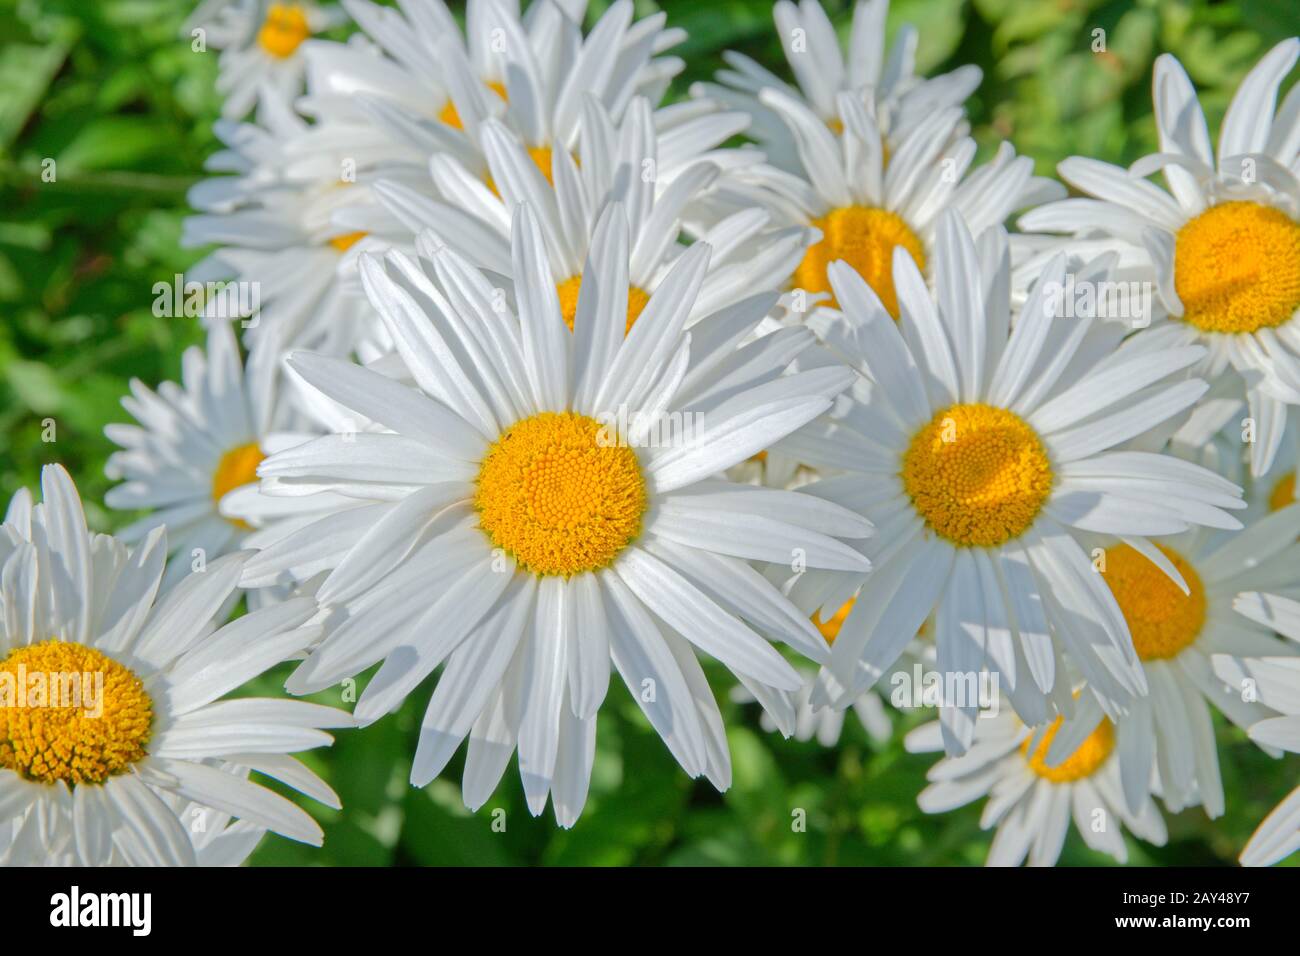 Weiß Aster Blumen, möglicherweise die Alpine Aster, Aster Alpinus. Stockfoto